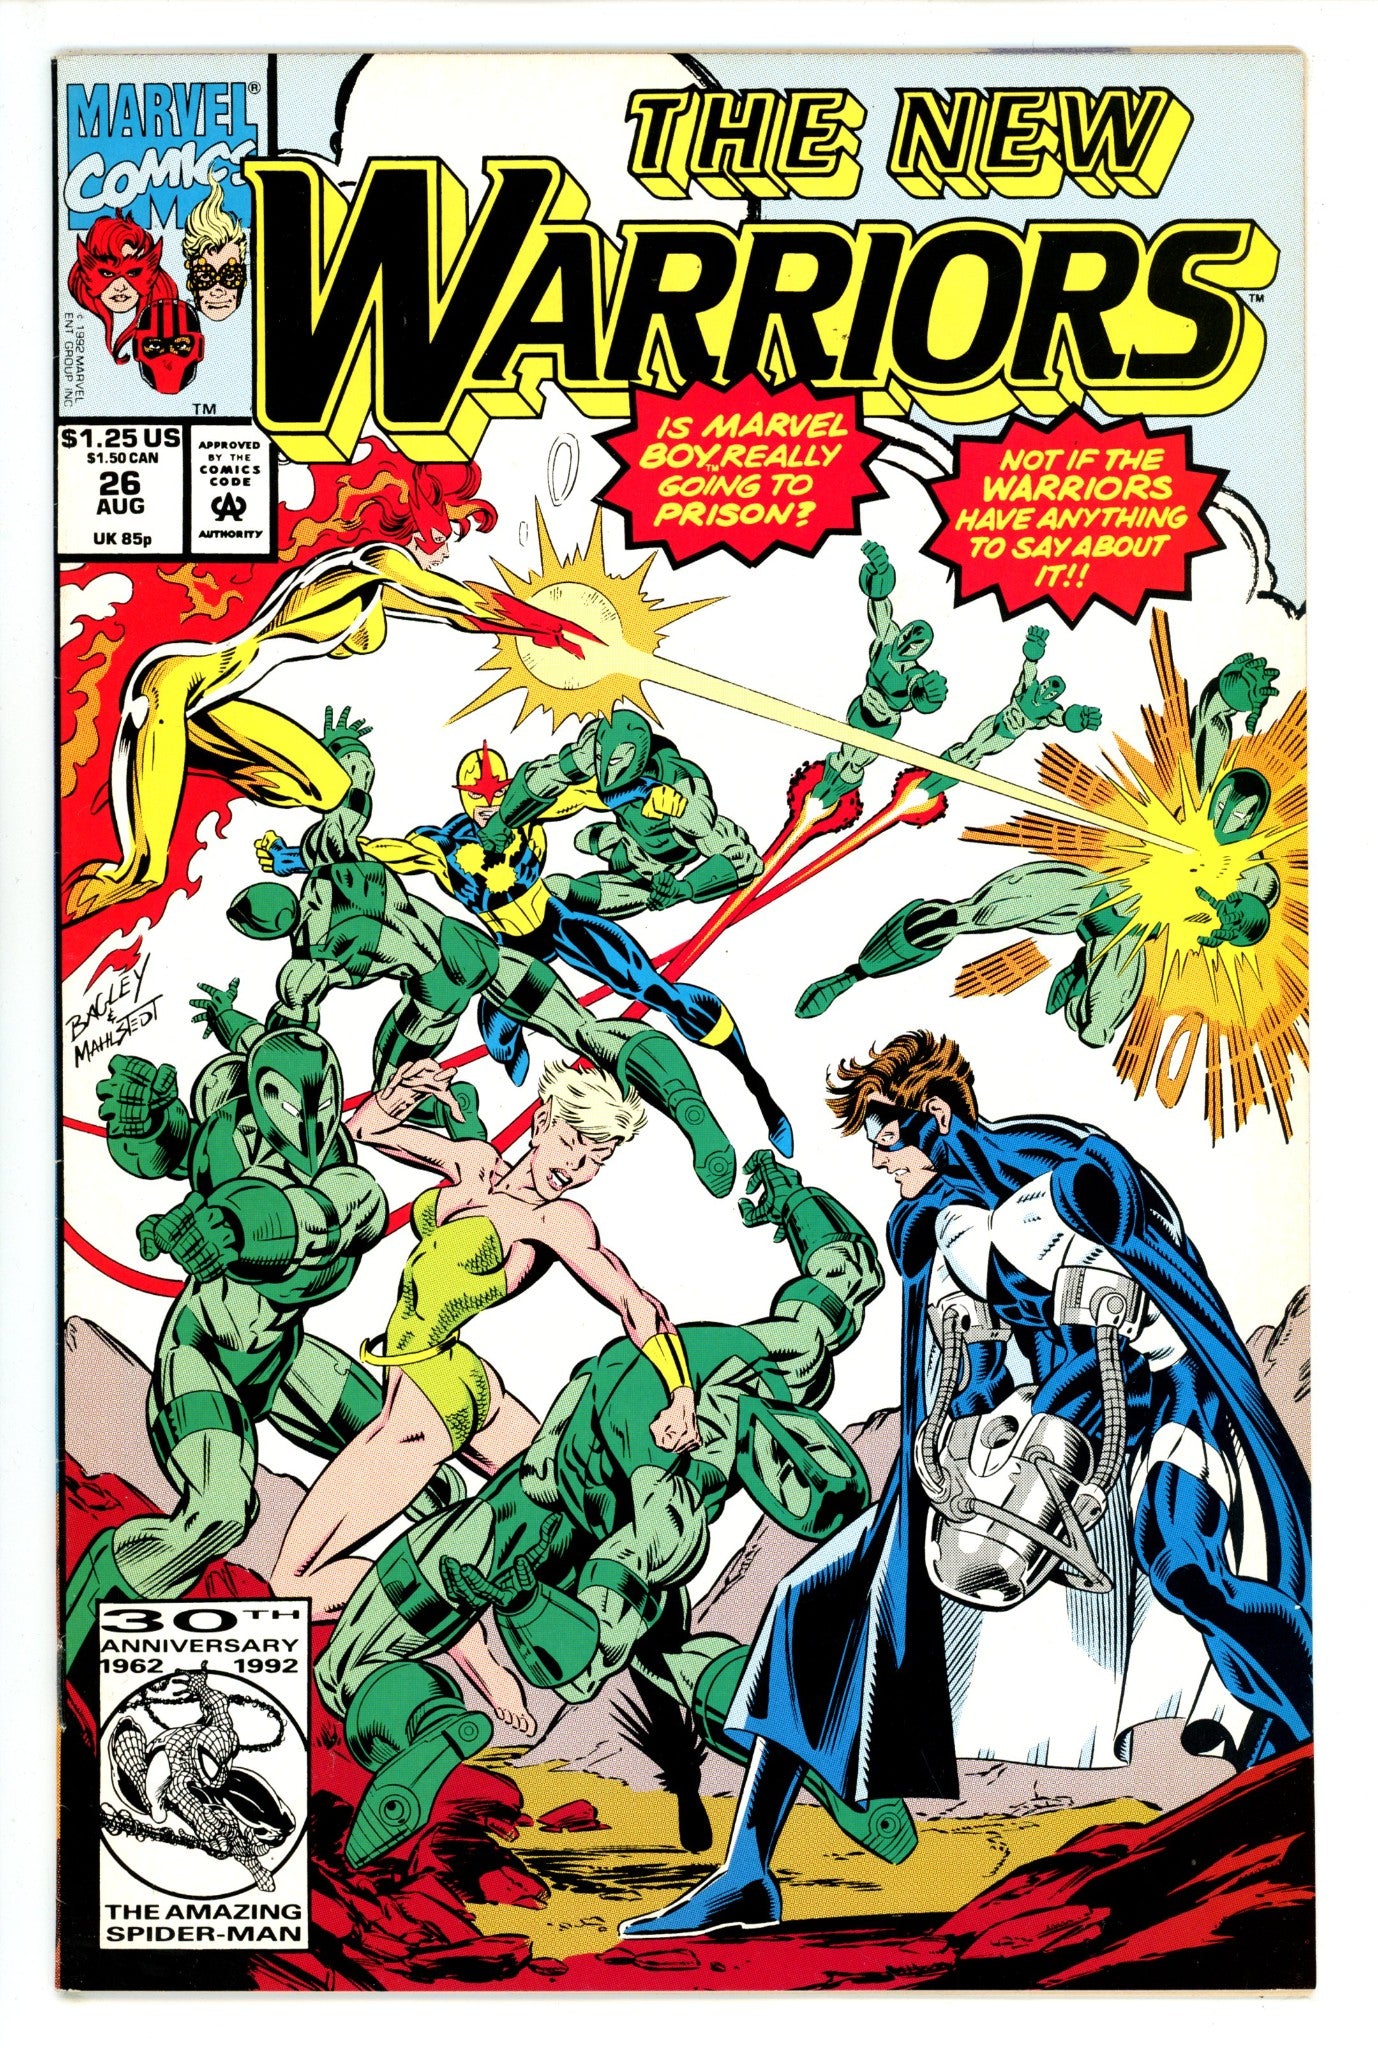 The New Warriors Vol 1 26 (1992)